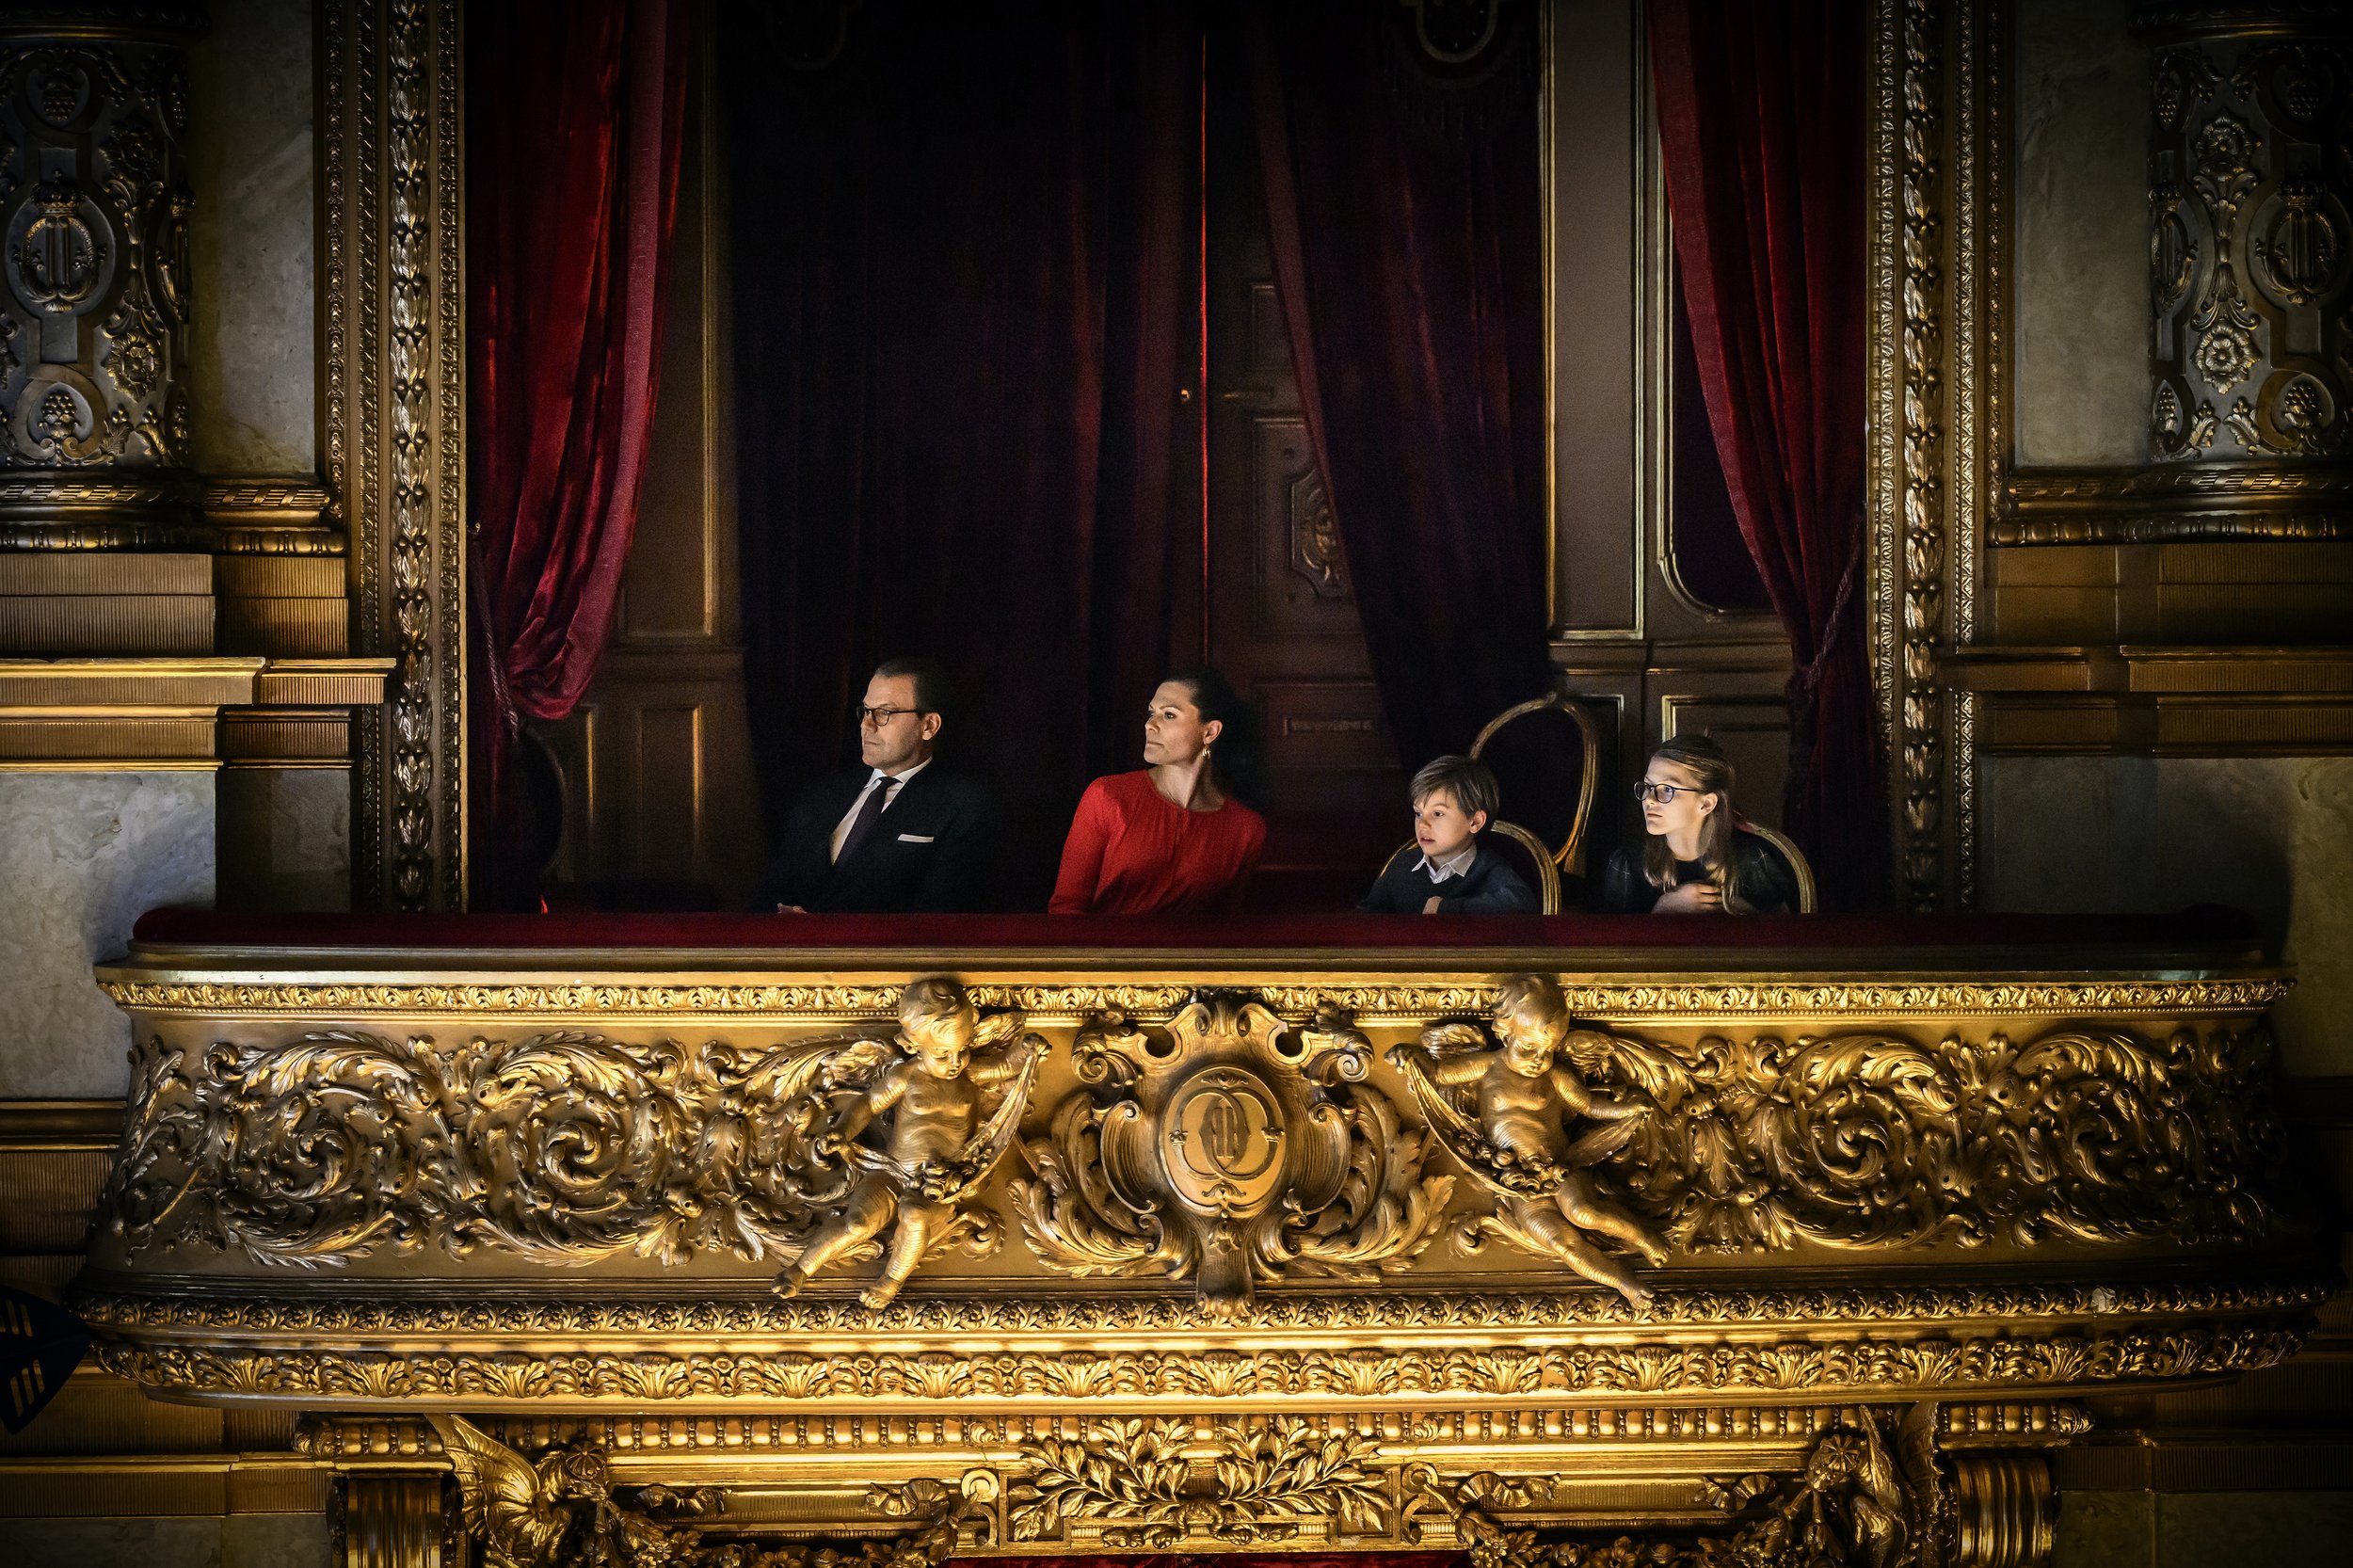 Foto: Sören Vilks/Kungliga Operan